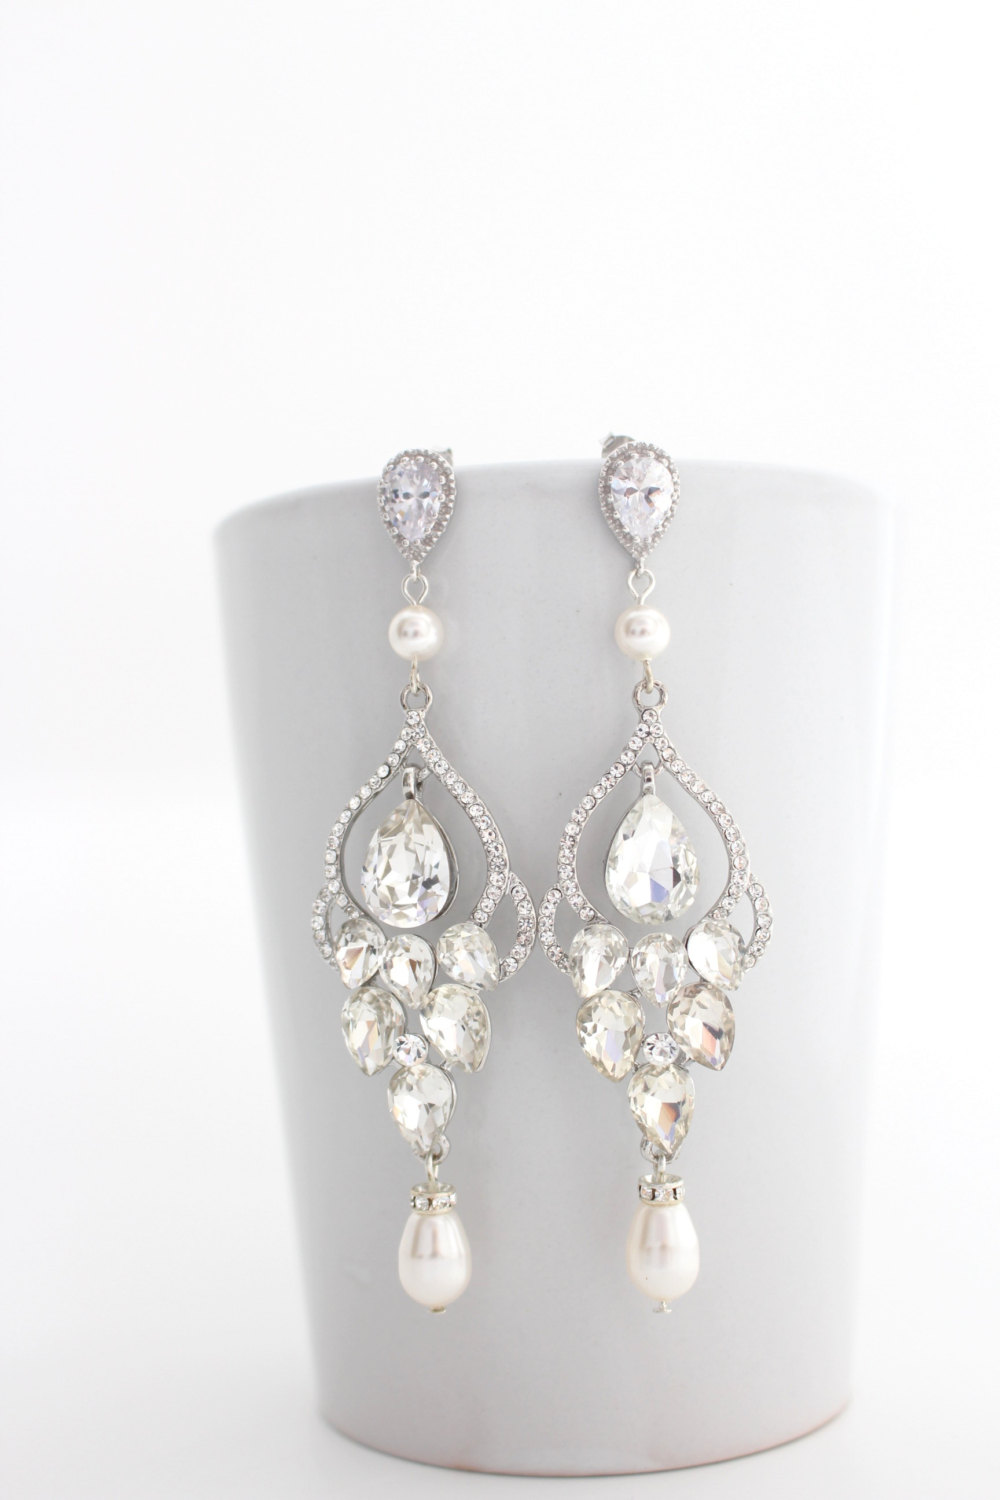 Chandelier Earrings - Statement Bridal Earrings